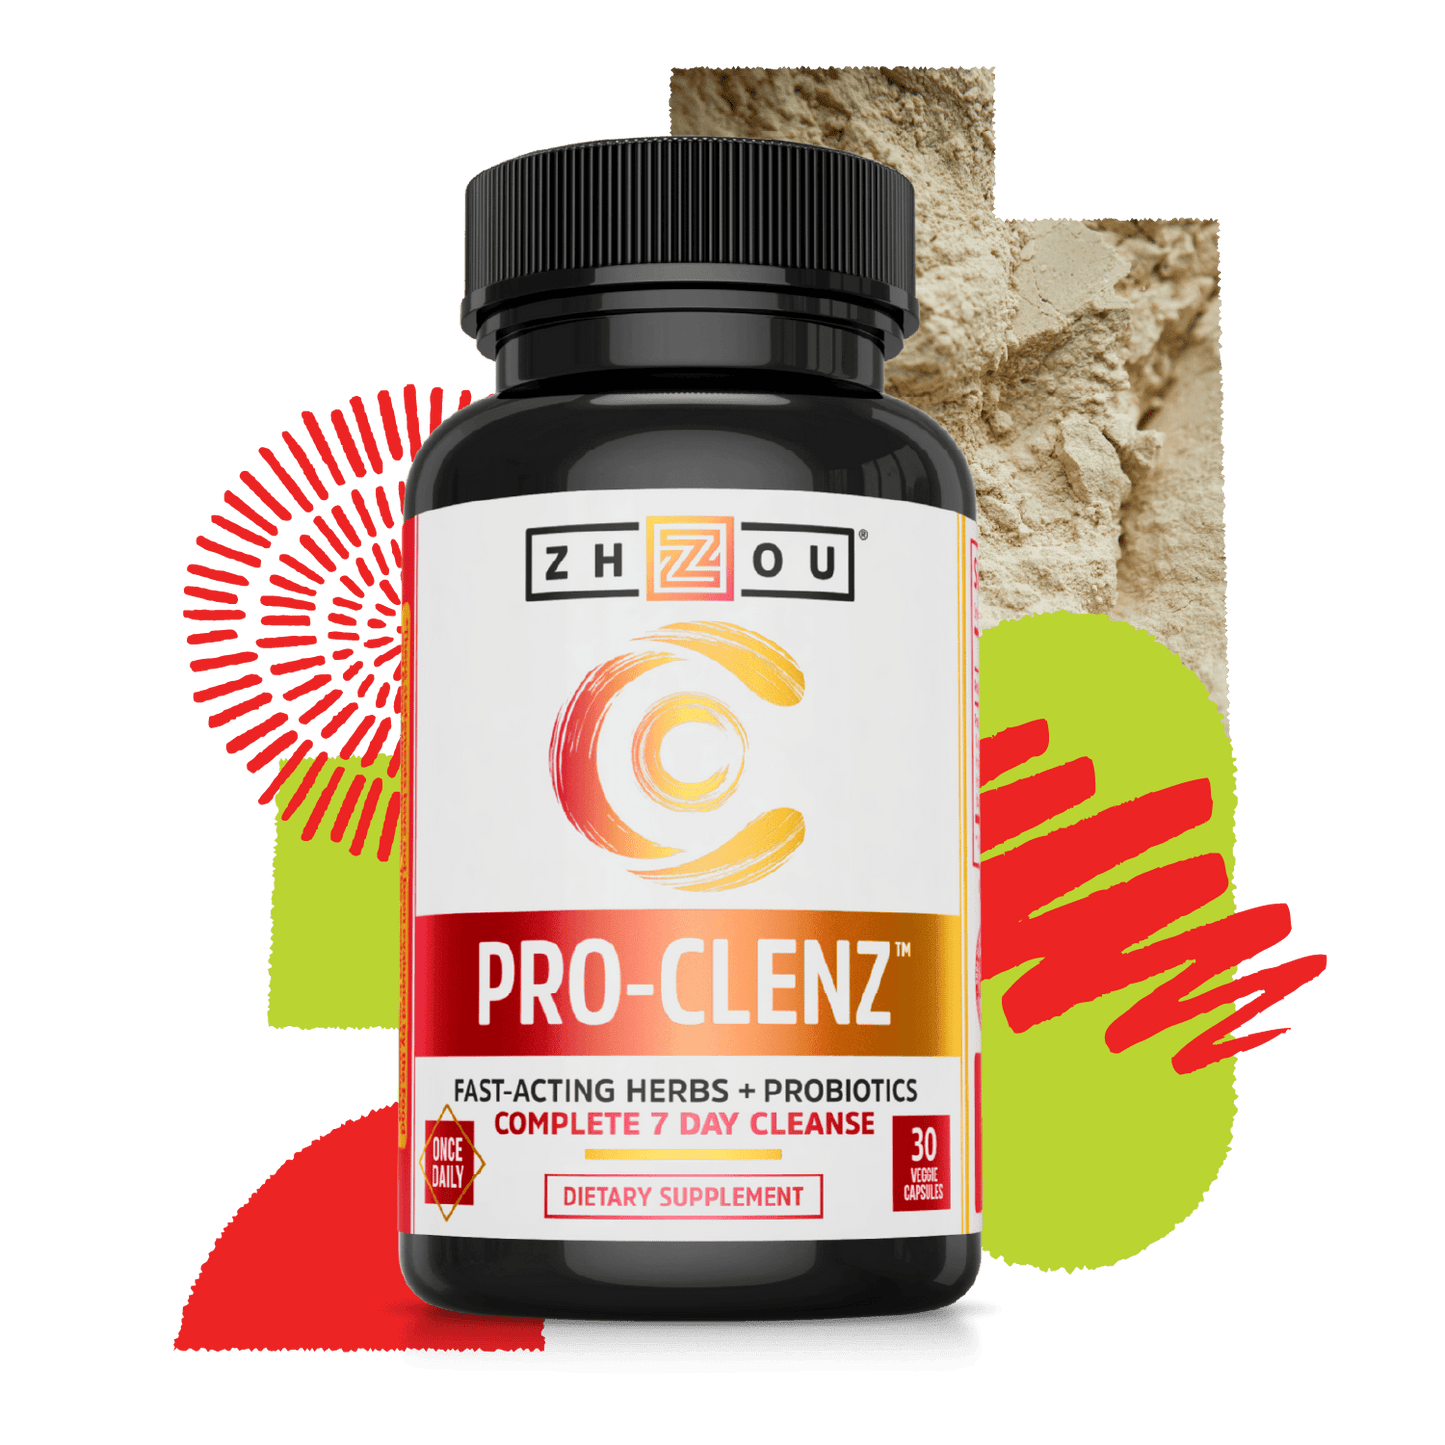 Pro-Clenz